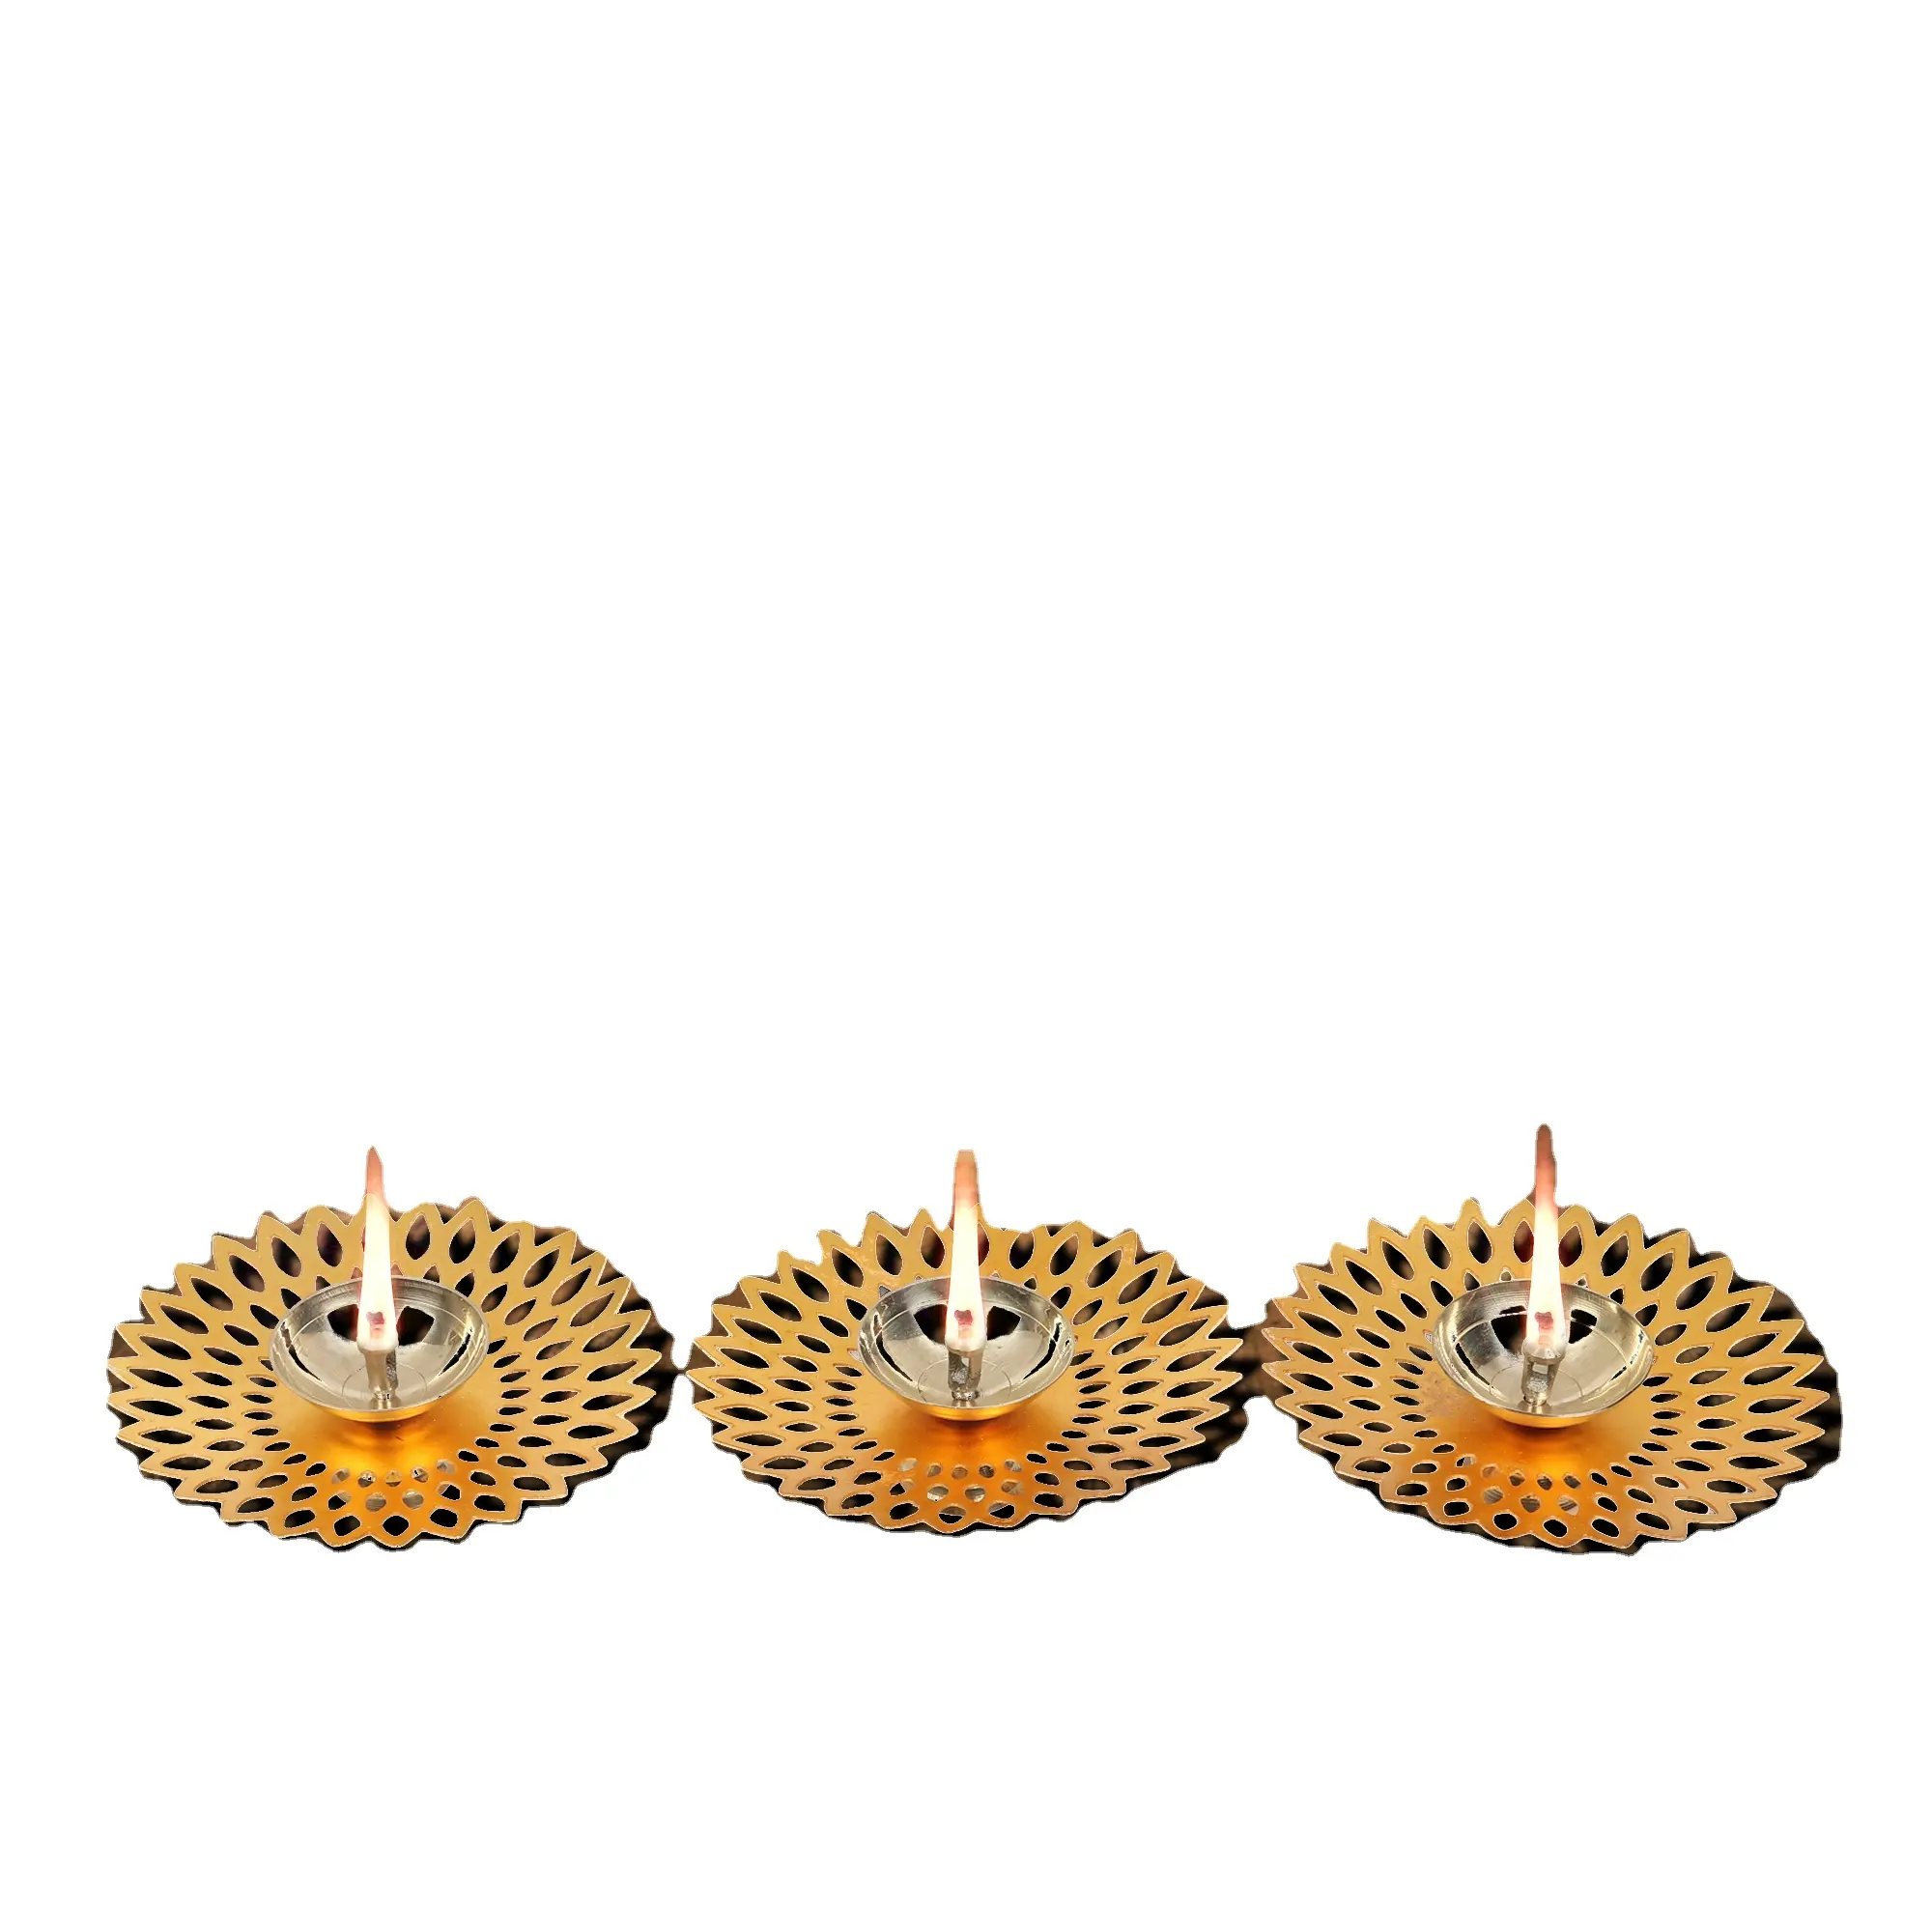 Elegante nuovo Design Diya per Puja Oil Lamp Lotus Shape Deepak per Pooja Diwali Decoration Items Diya for Daily Puja & Festival T